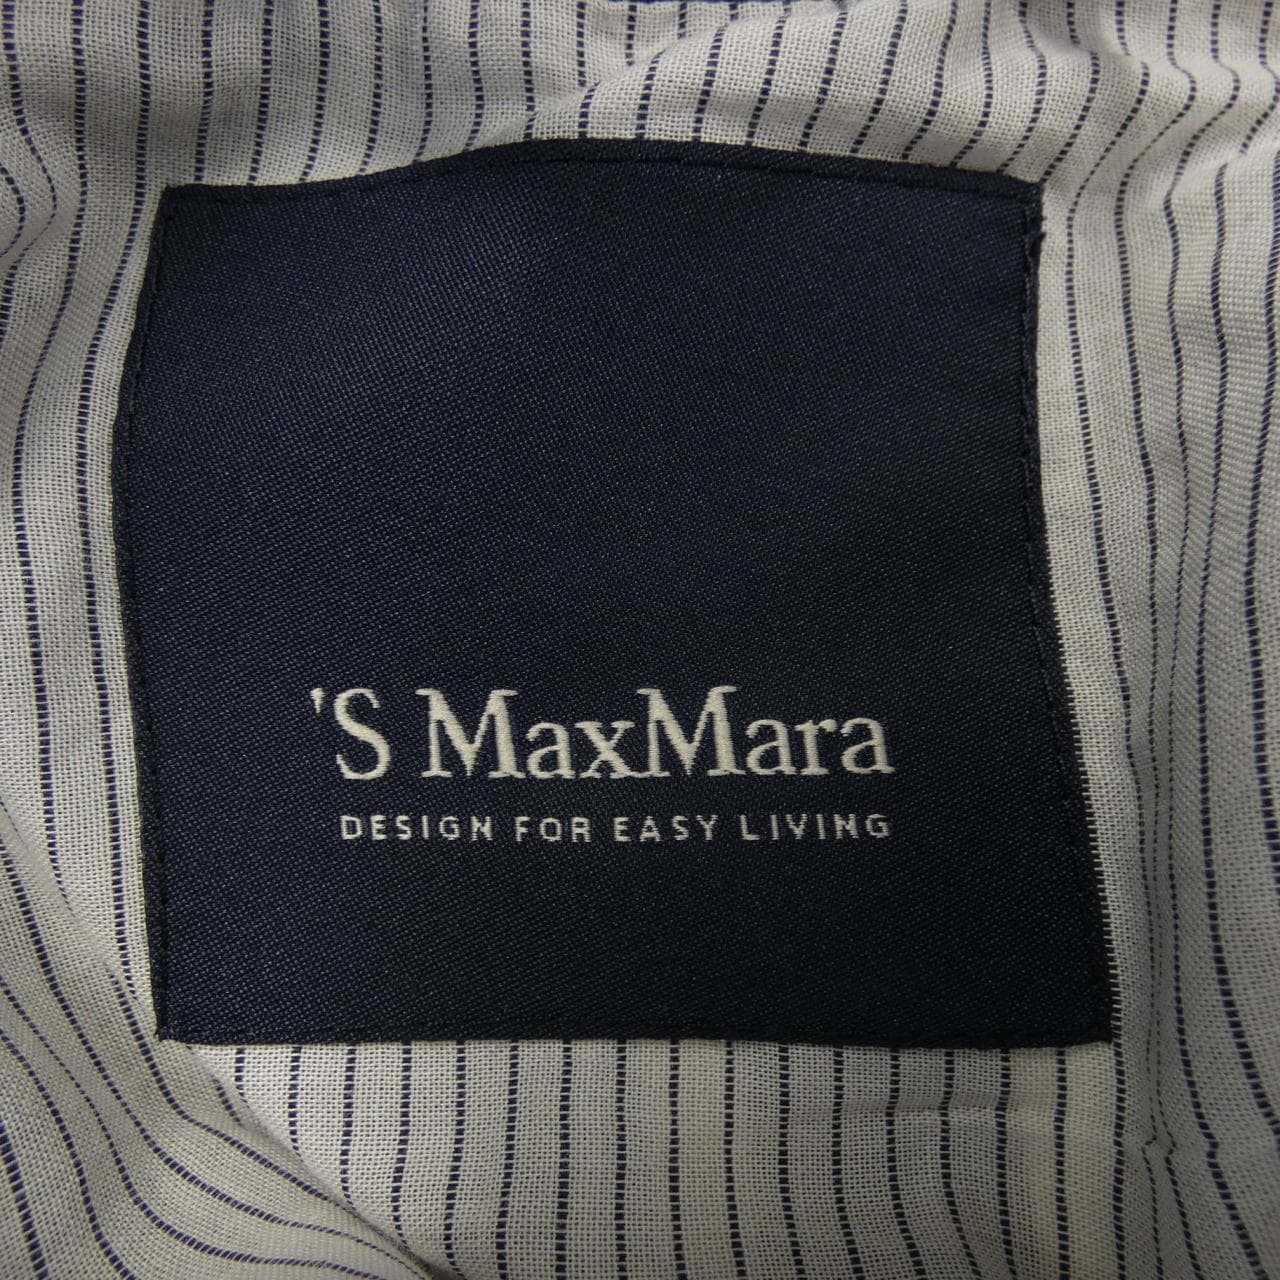 Es Max Mara's Max Mara Jacket